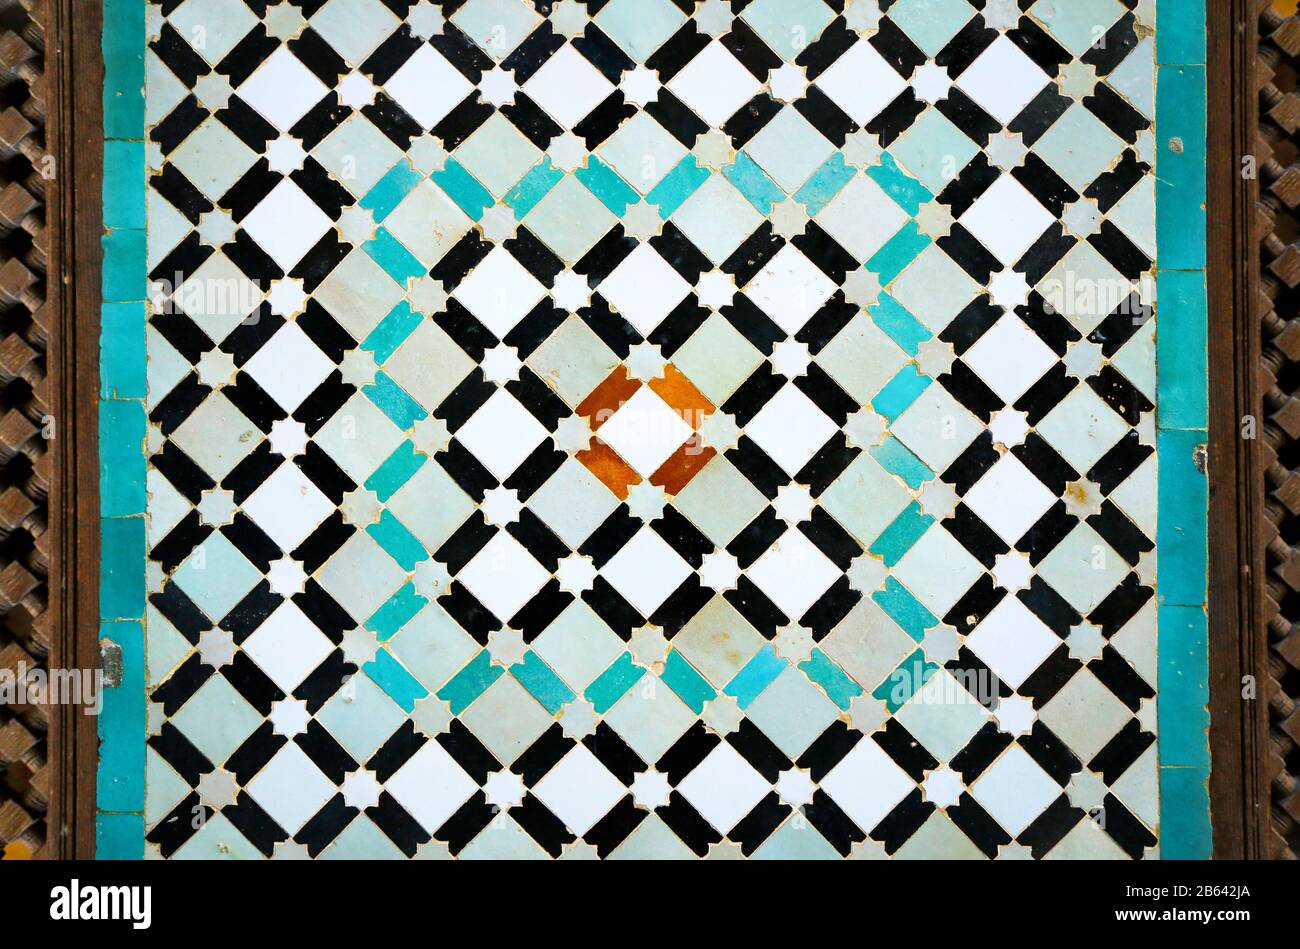 Disegno geometrico a mosaico - piastrelle in ceramica - in casa marocchina, moschea Foto Stock